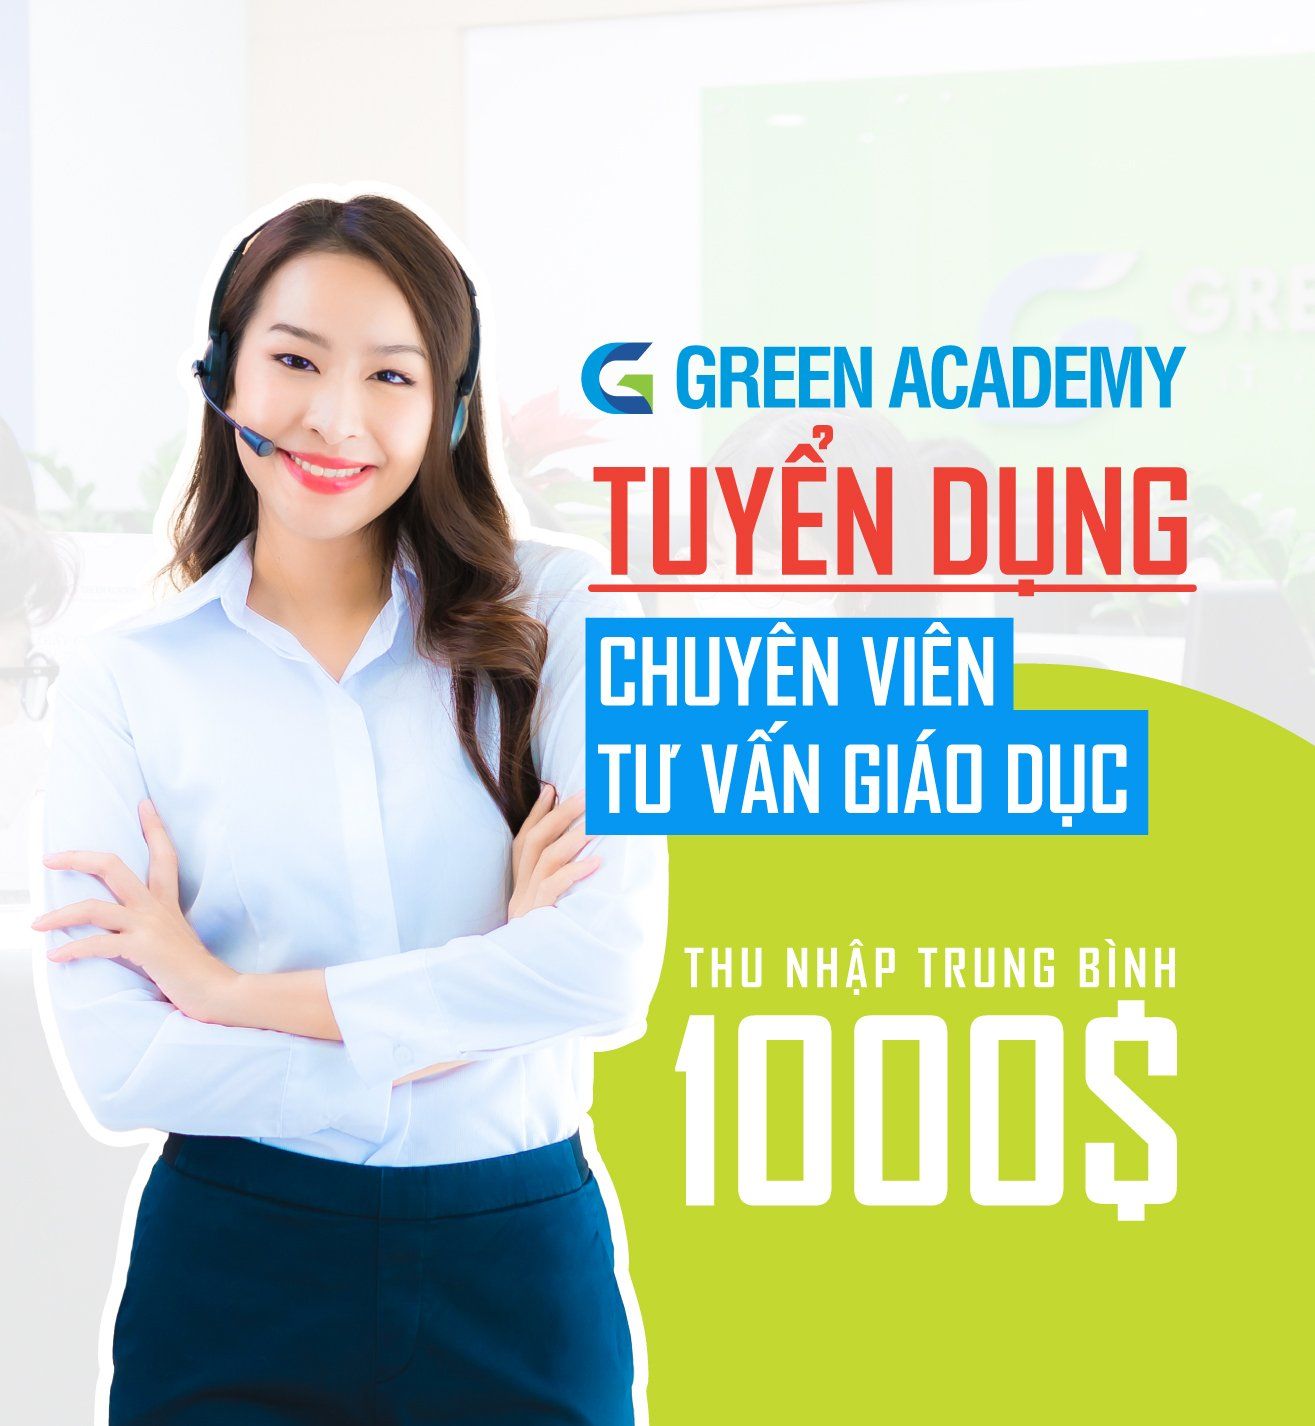 Green Academy đang tuyển dụng chuyên viên tư vấn giáo dục